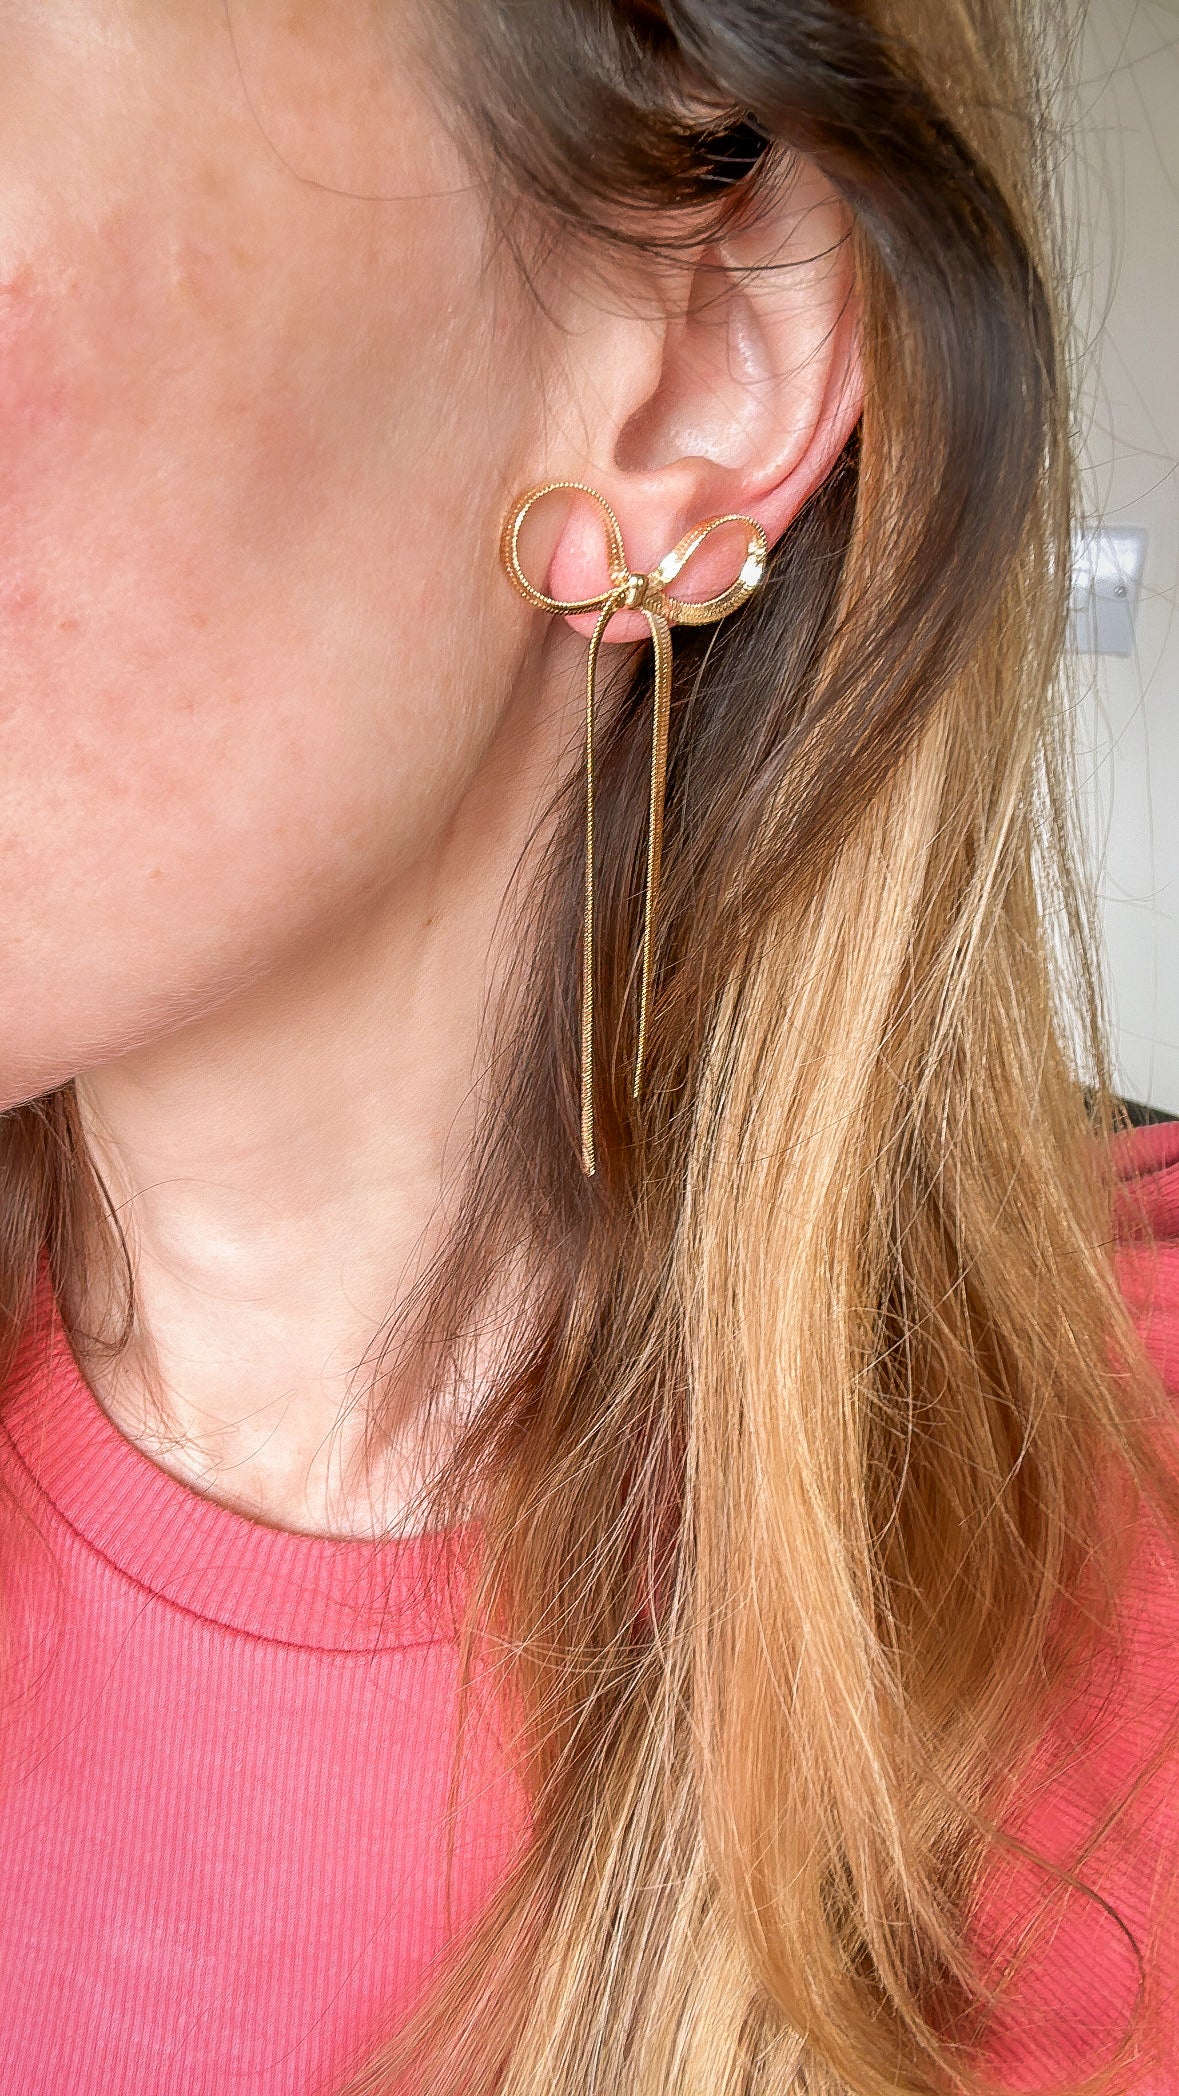 Bow earrings